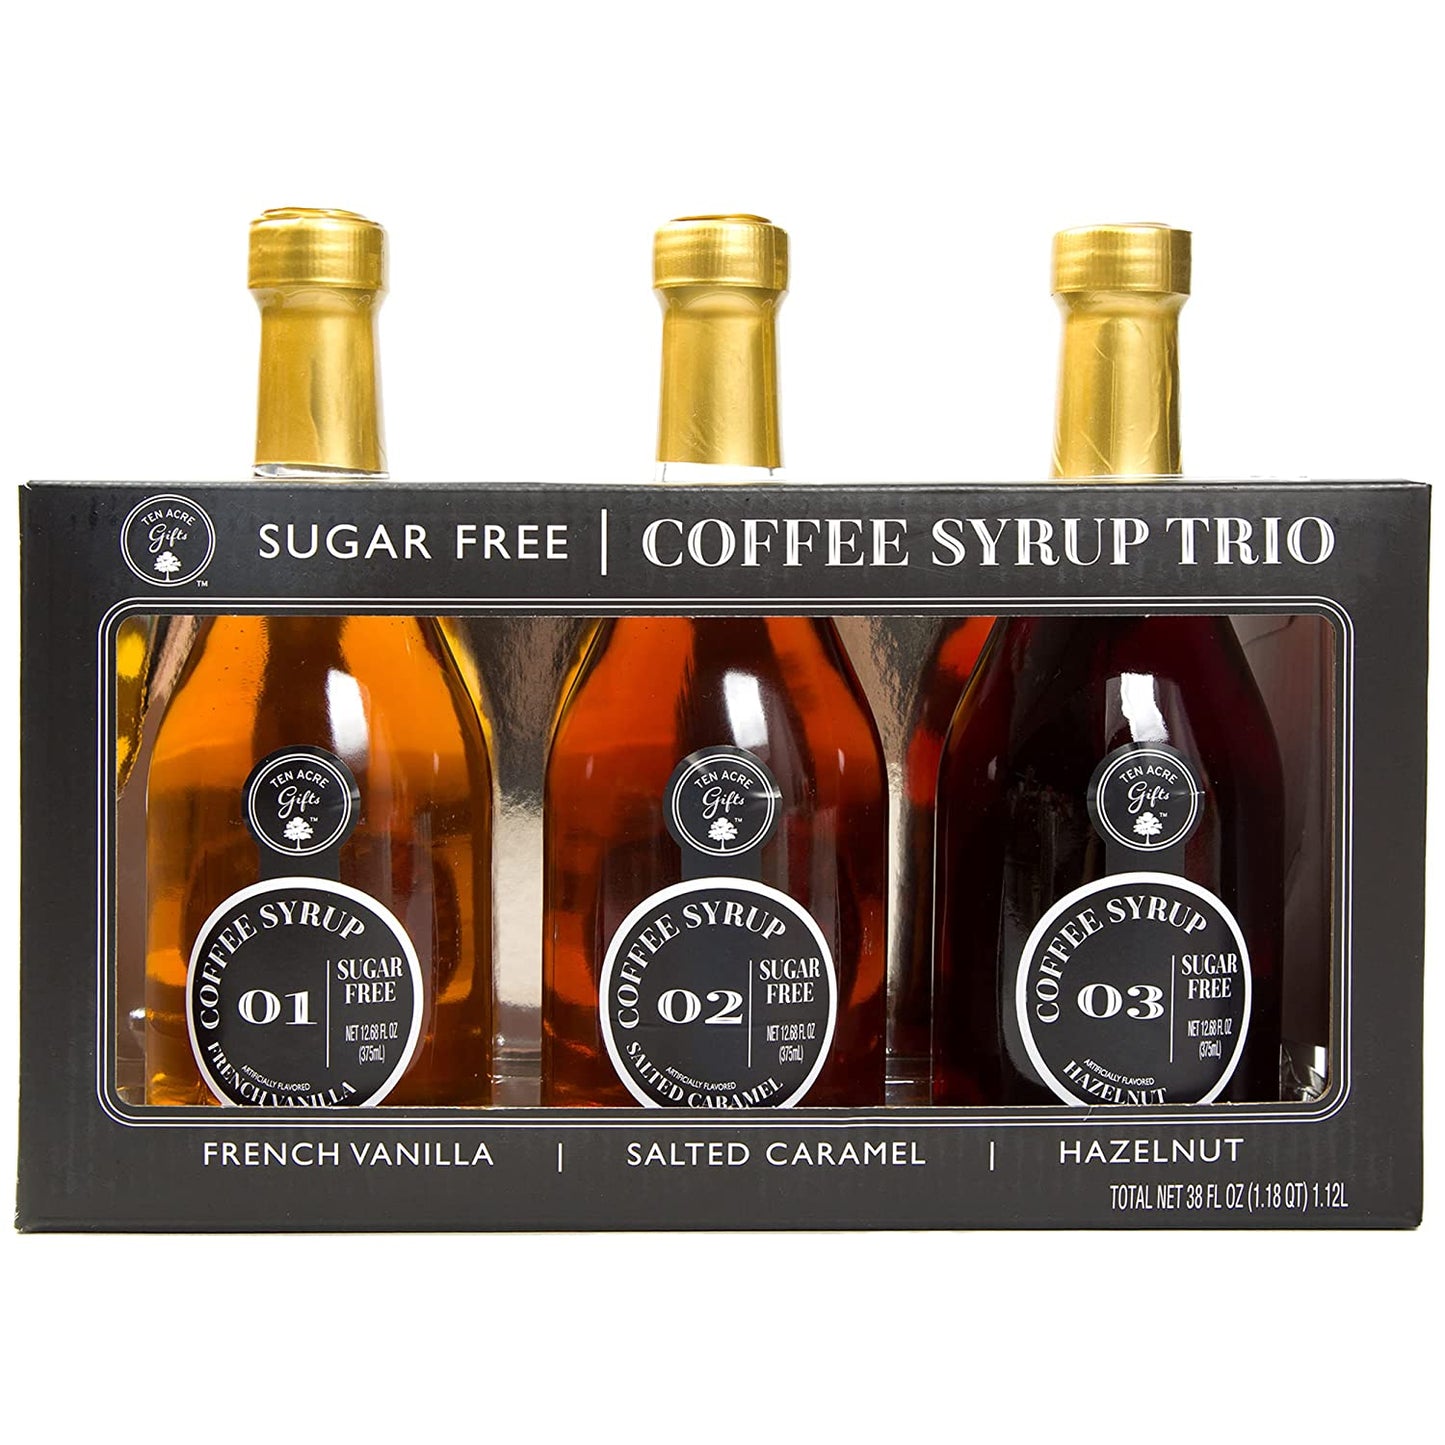 Sugar Free Coffee Syrup Trio